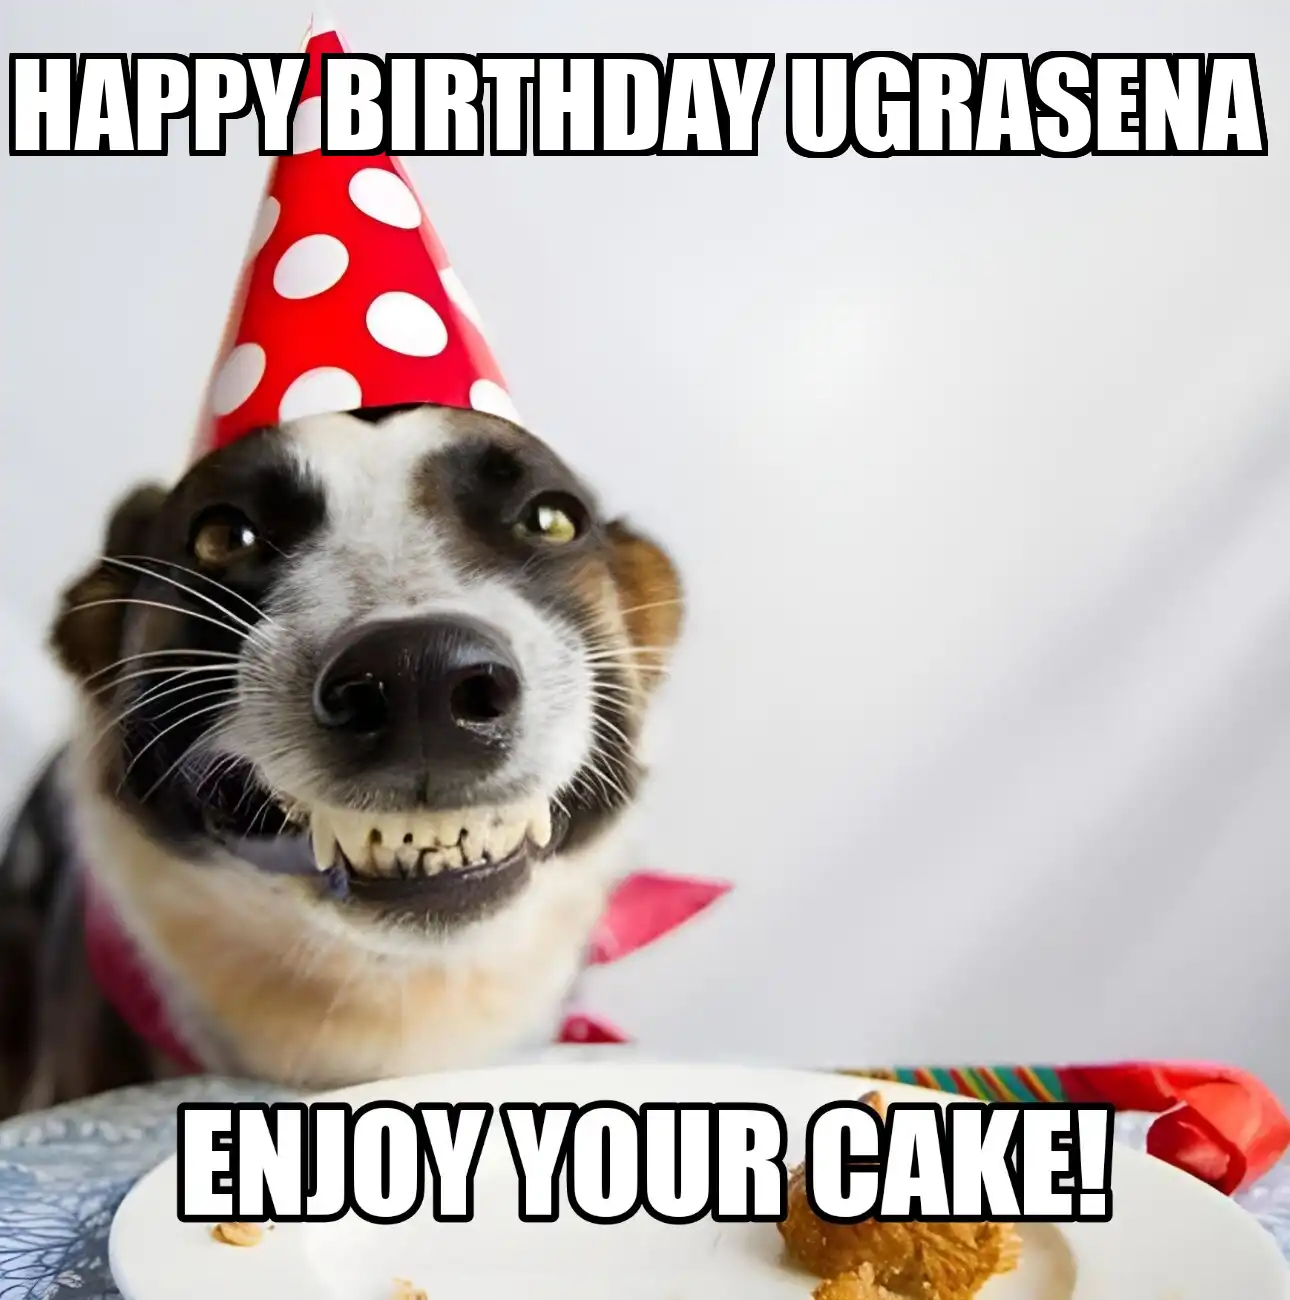 Happy Birthday Ugrasena Enjoy Your Cake Dog Meme